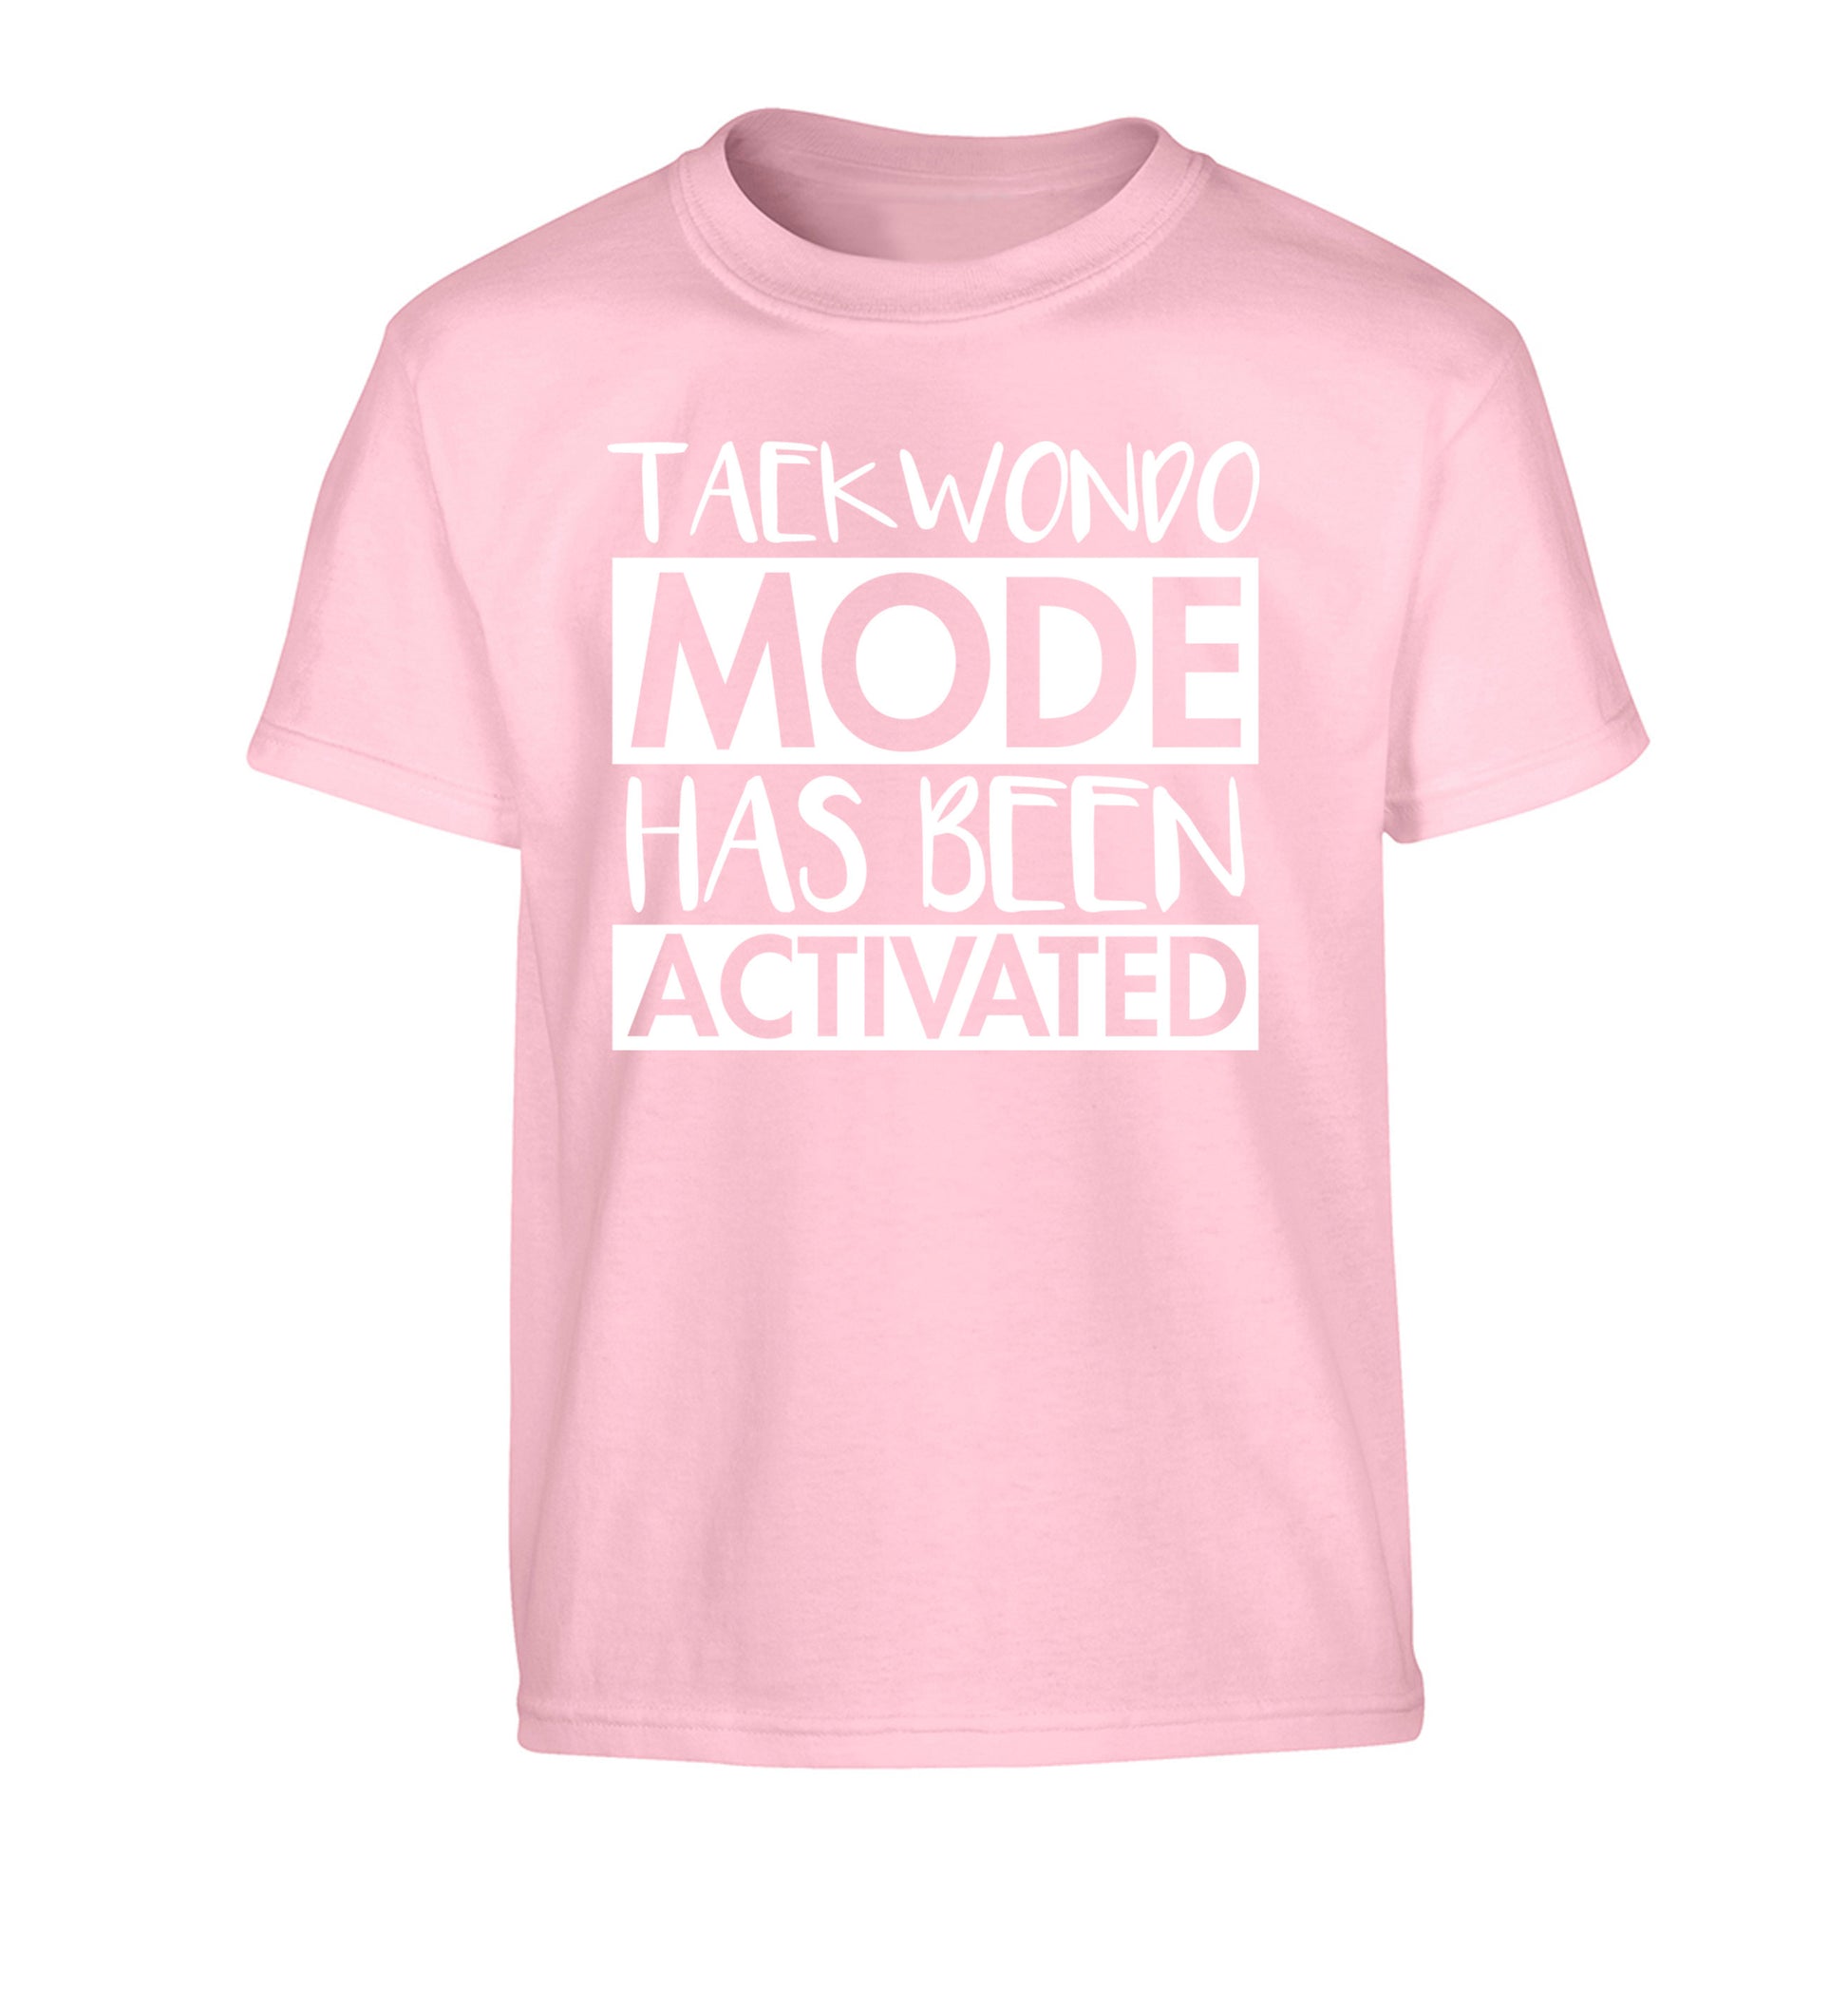 Taekwondo mode activated Children's light pink Tshirt 12-14 Years